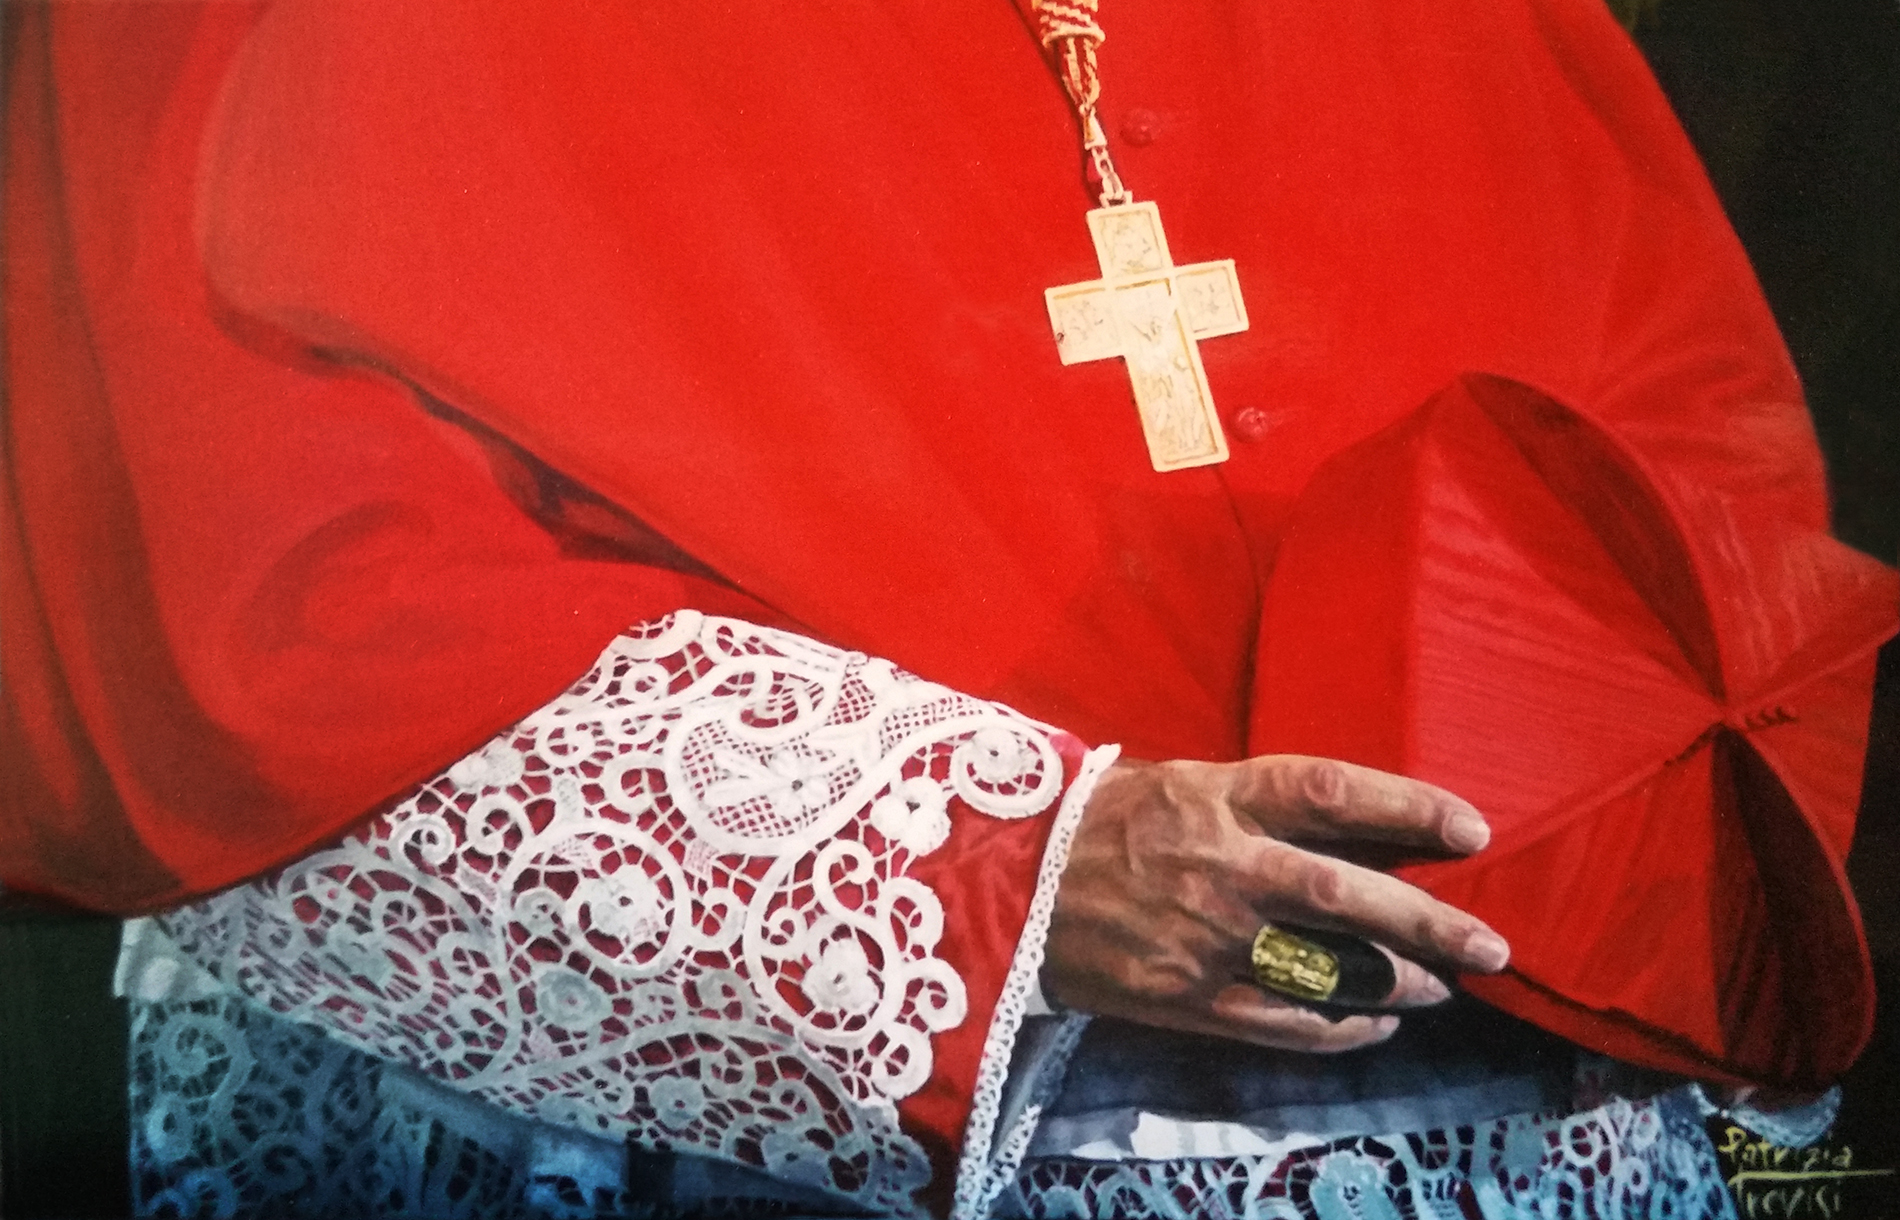 ritratto del Cardinal Sepe Sala dei cardinali Propaganda Fide Roma, olio su tela ritratto di cardinale